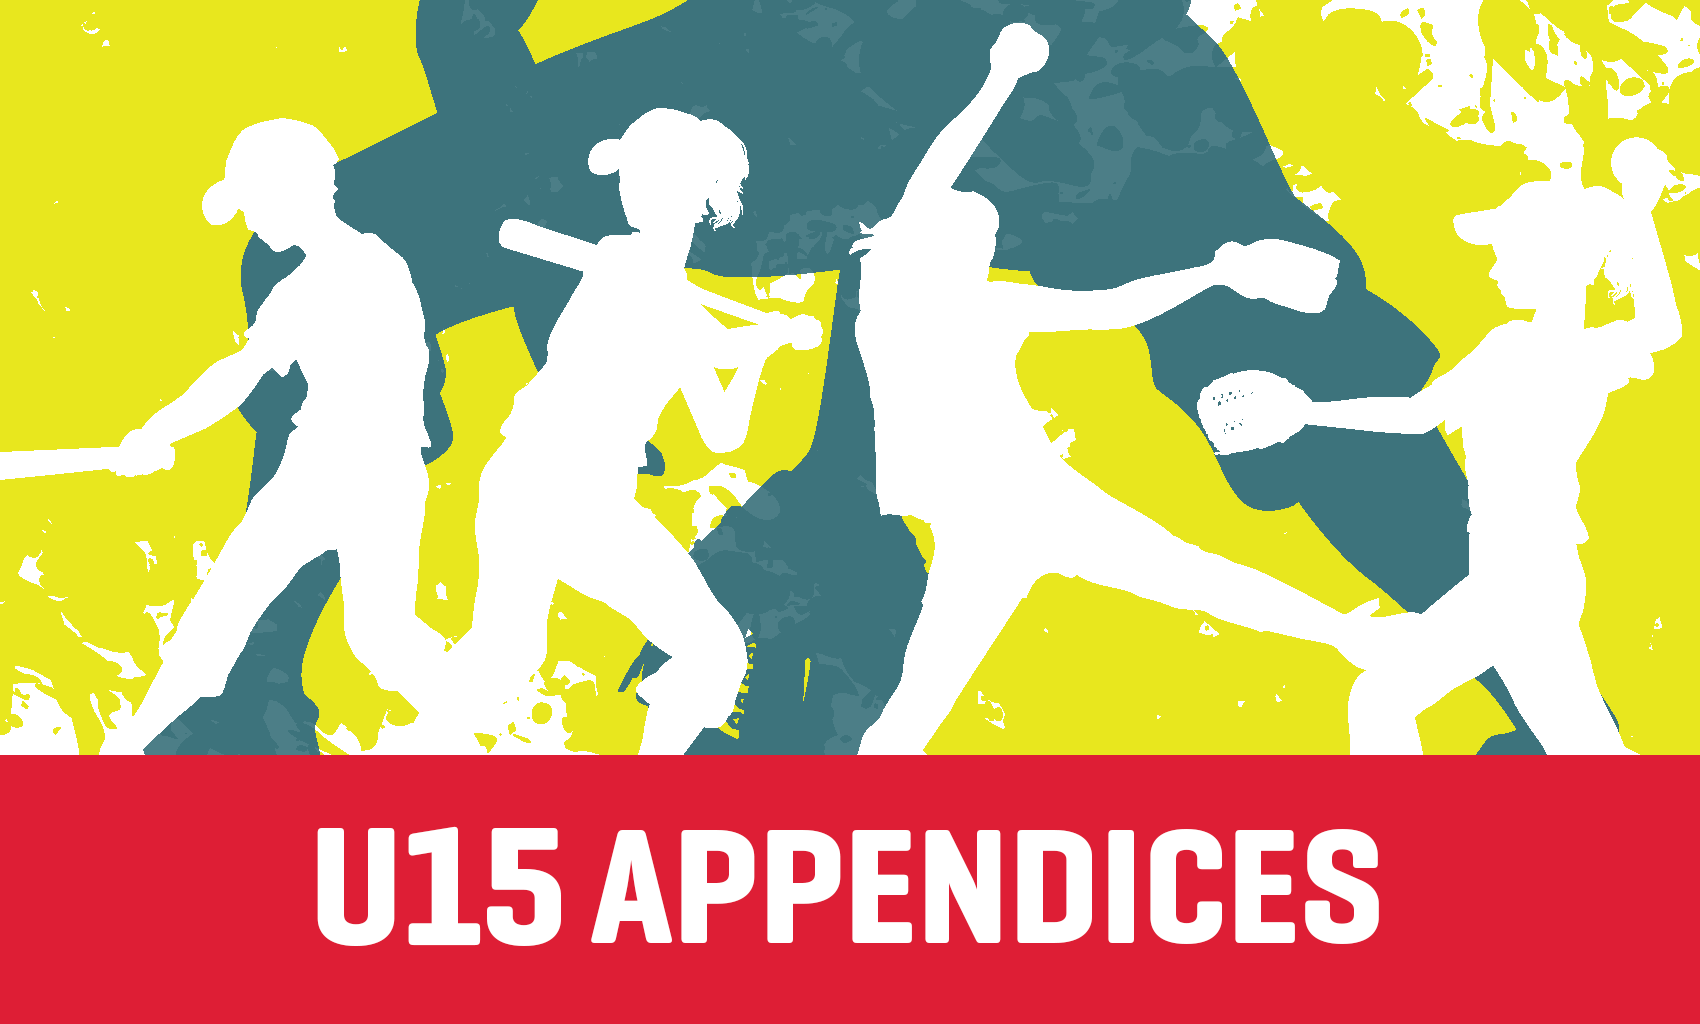 U15 Appendices